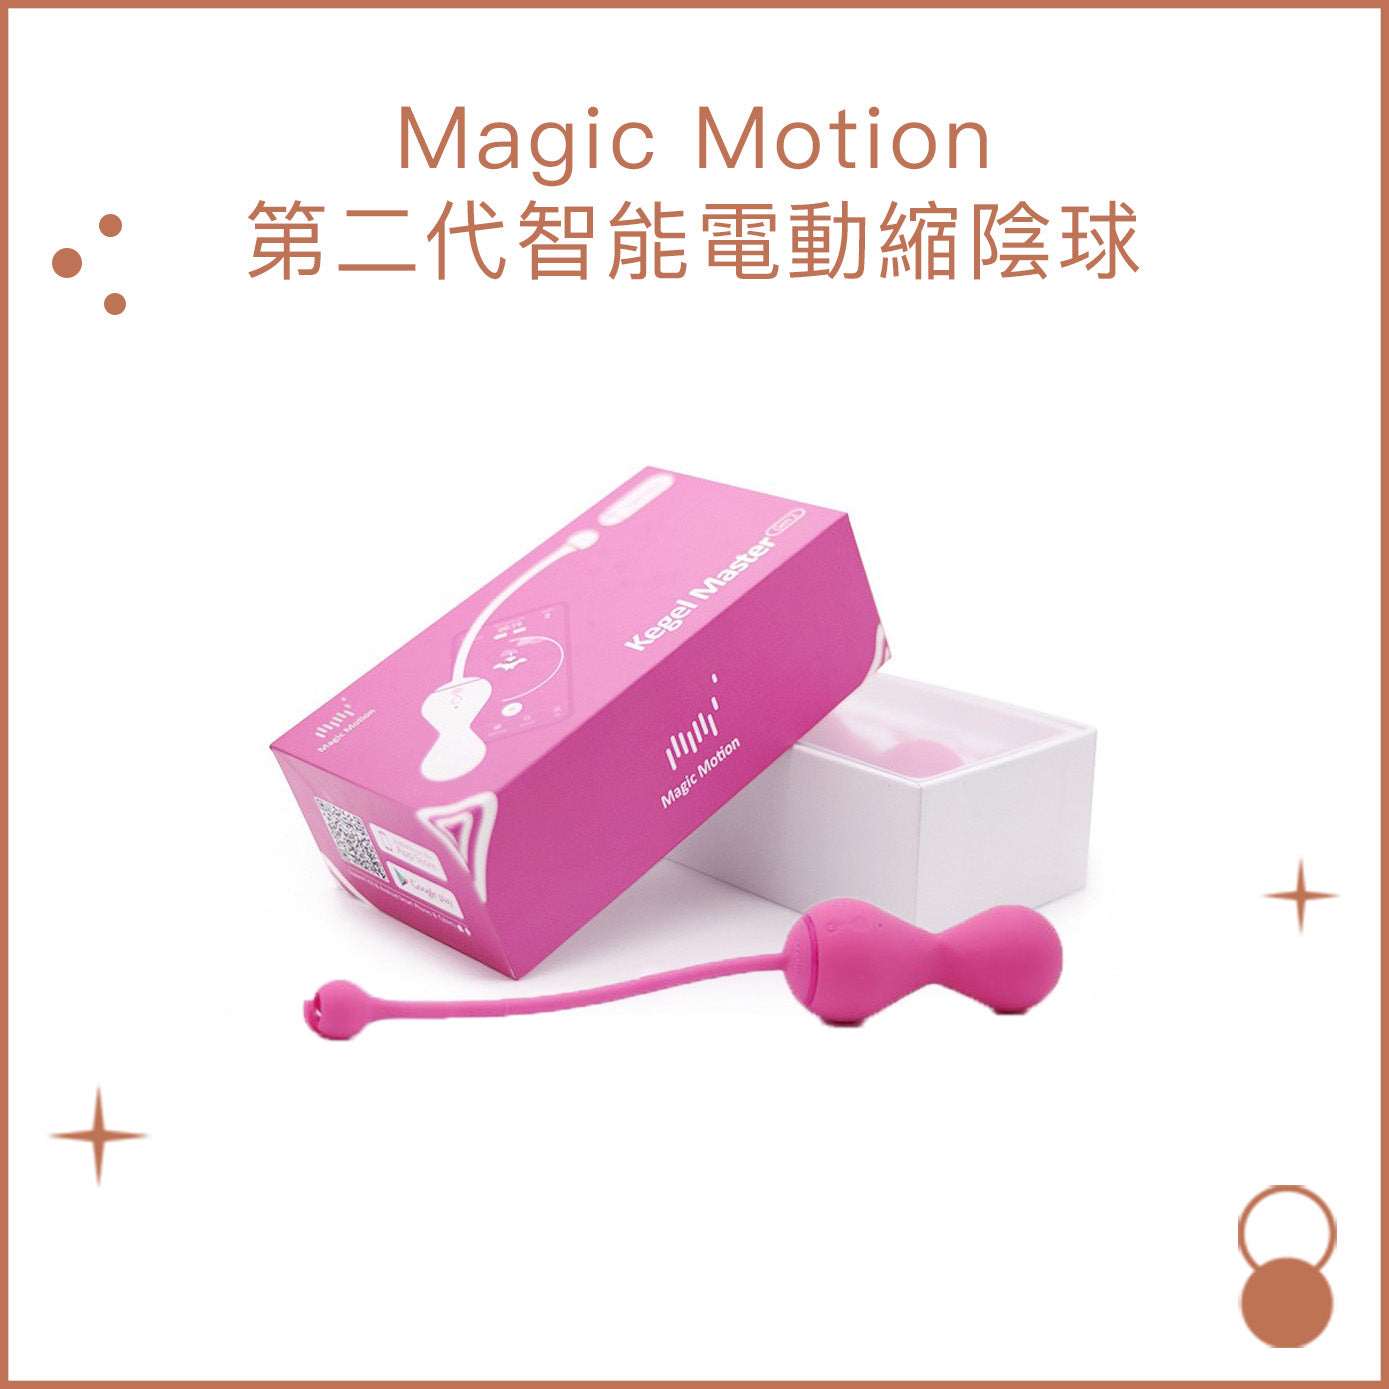 Magic Motion 第二代智能電動縮陰球